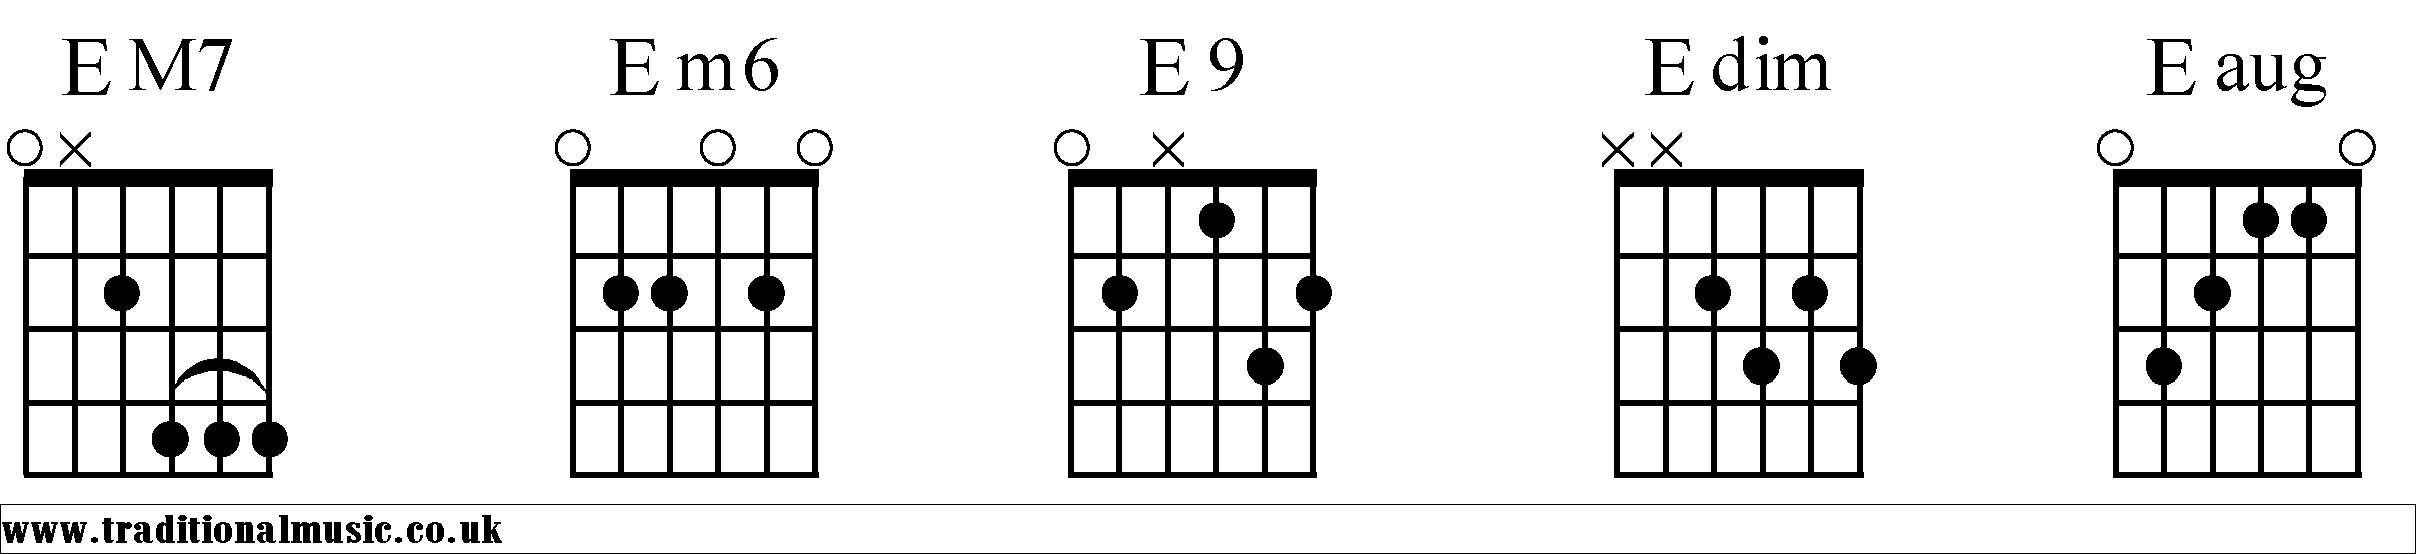 E Chords diagrams Guitar 2